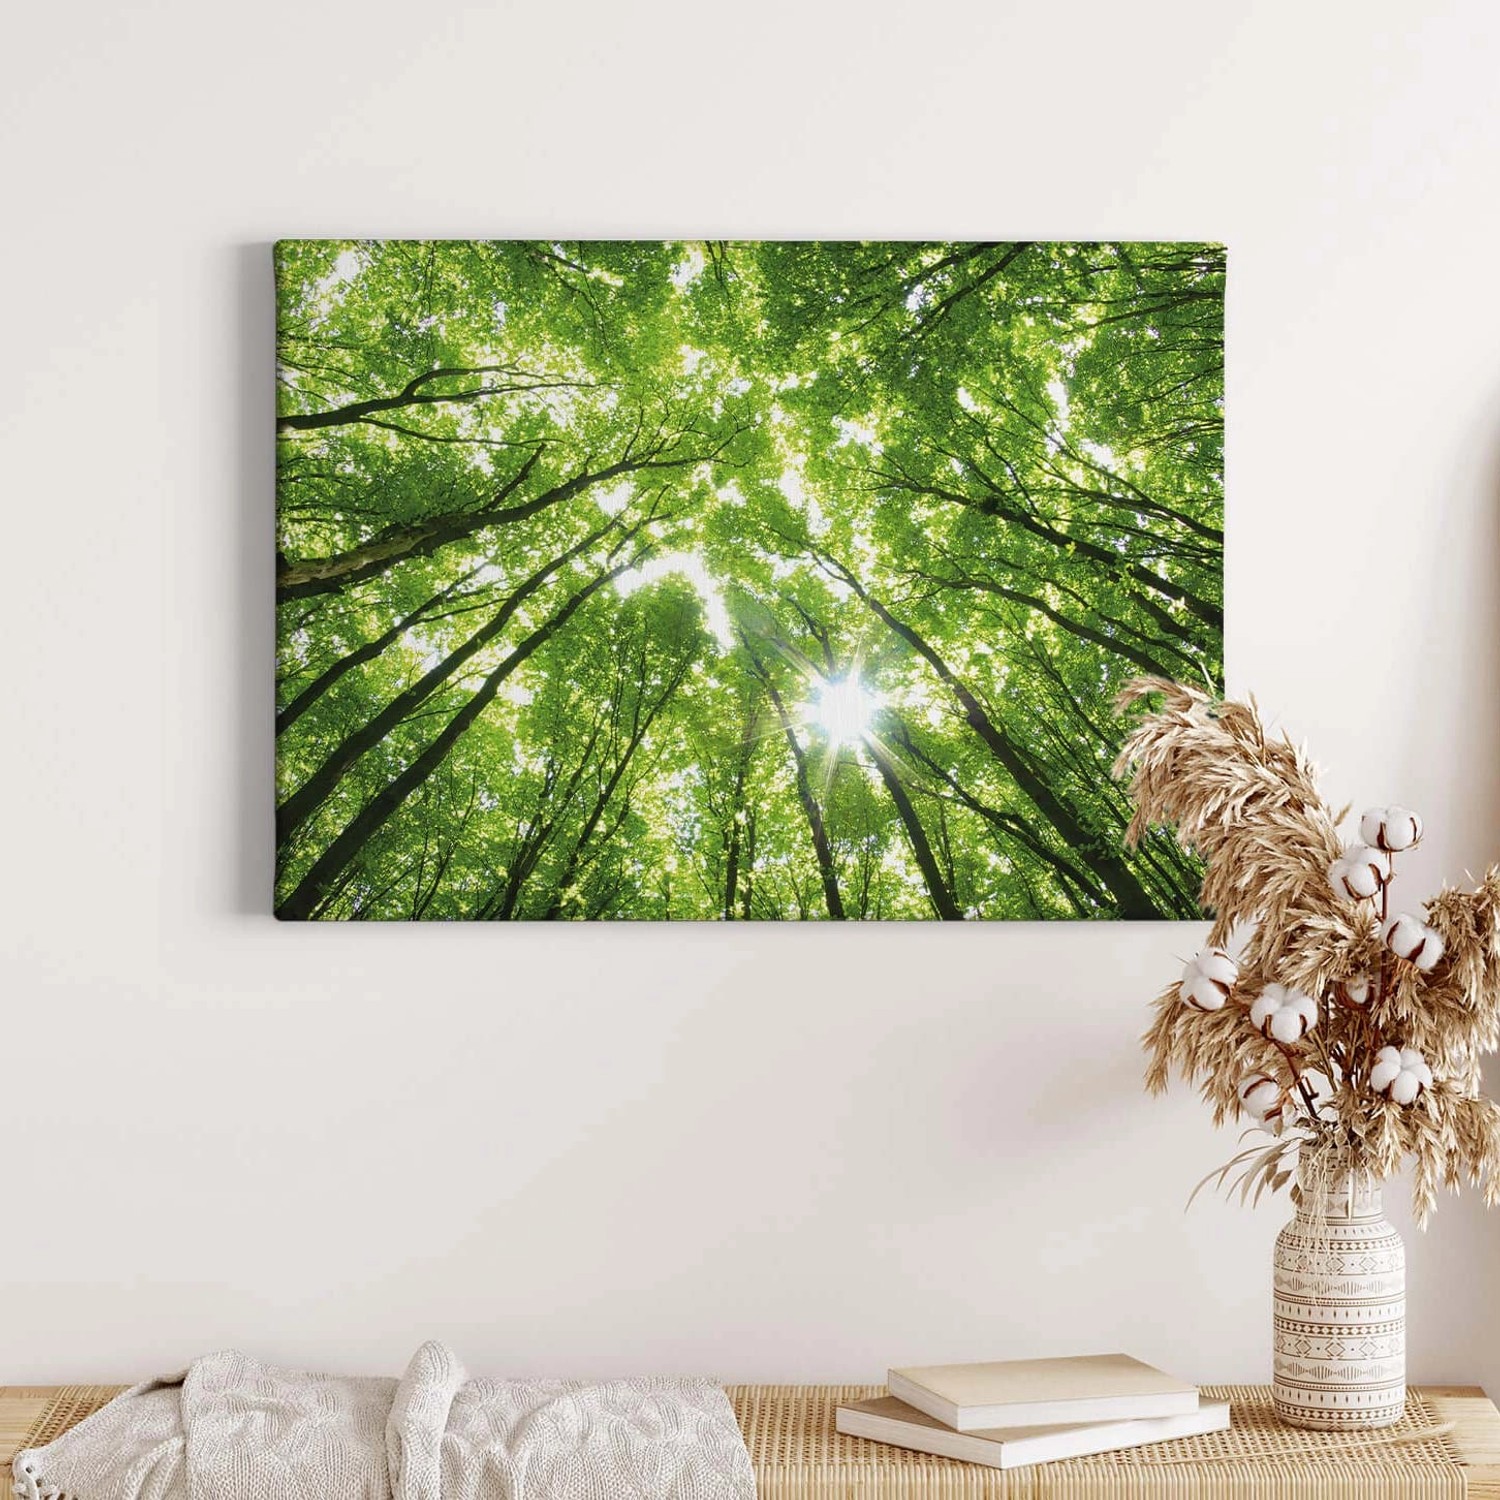 Bricoflor Leinwandbild Mit Wald Motiv Wandbild Mit Bäumen Ideal Für Schlafzimmer Und Büro Grünes Leinwand Bild Mit Wald 